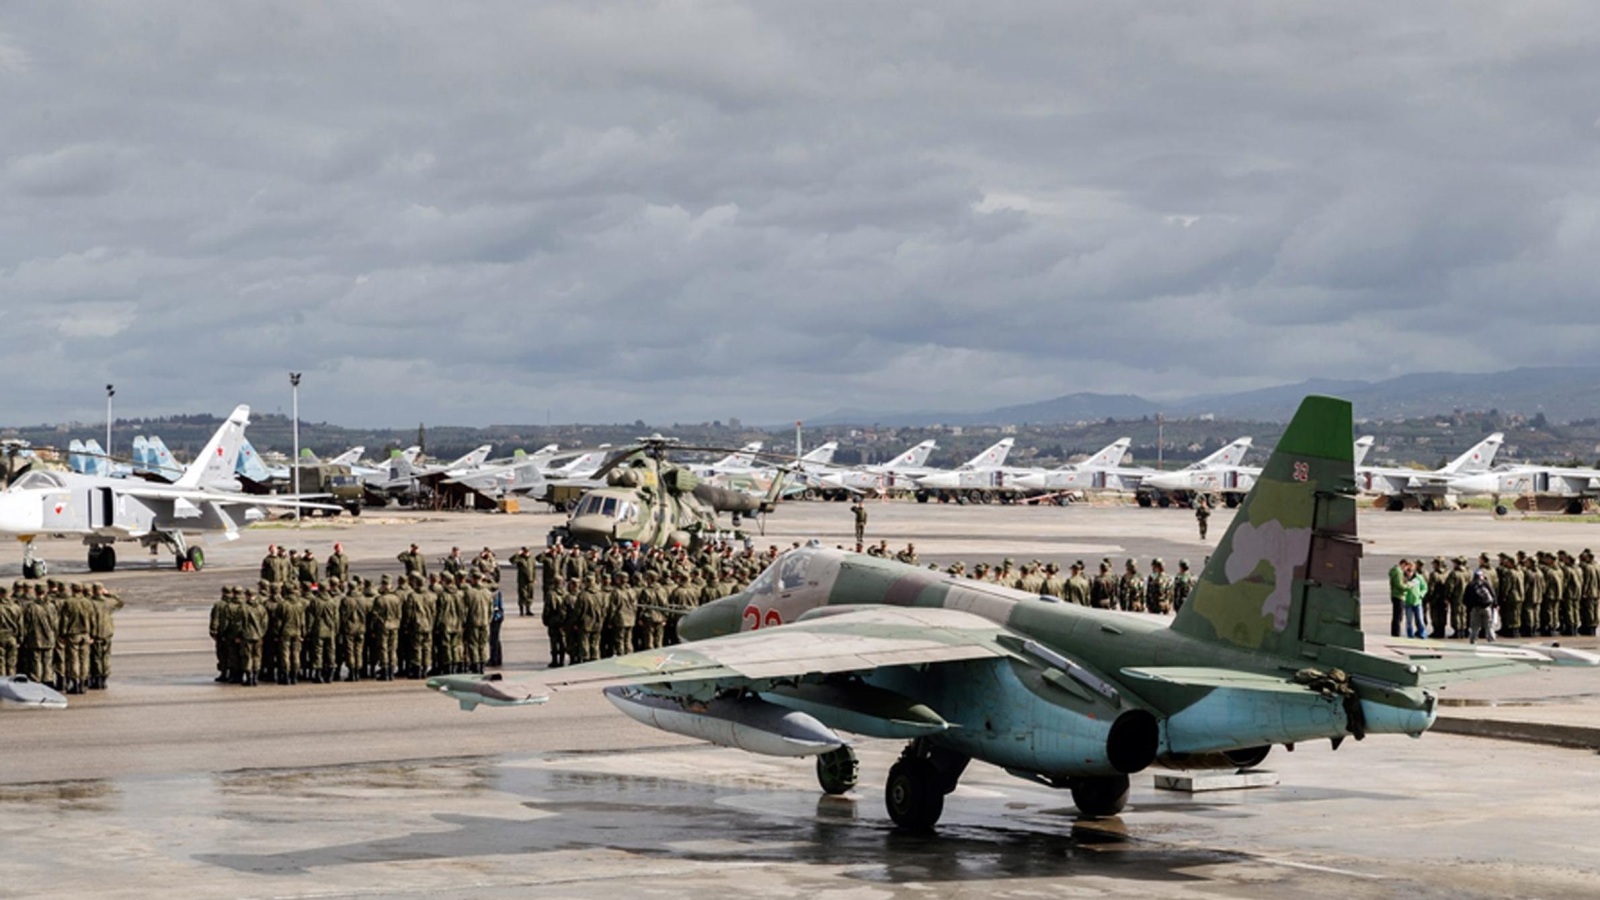 ‪الطيران الروسي سيدعم هجوم جيش النظام على الرقة ودير الزور‬ الطيران الروسي سيدعم هجوم جيش النظام على الرقة ودير الزور (الأوروبية)